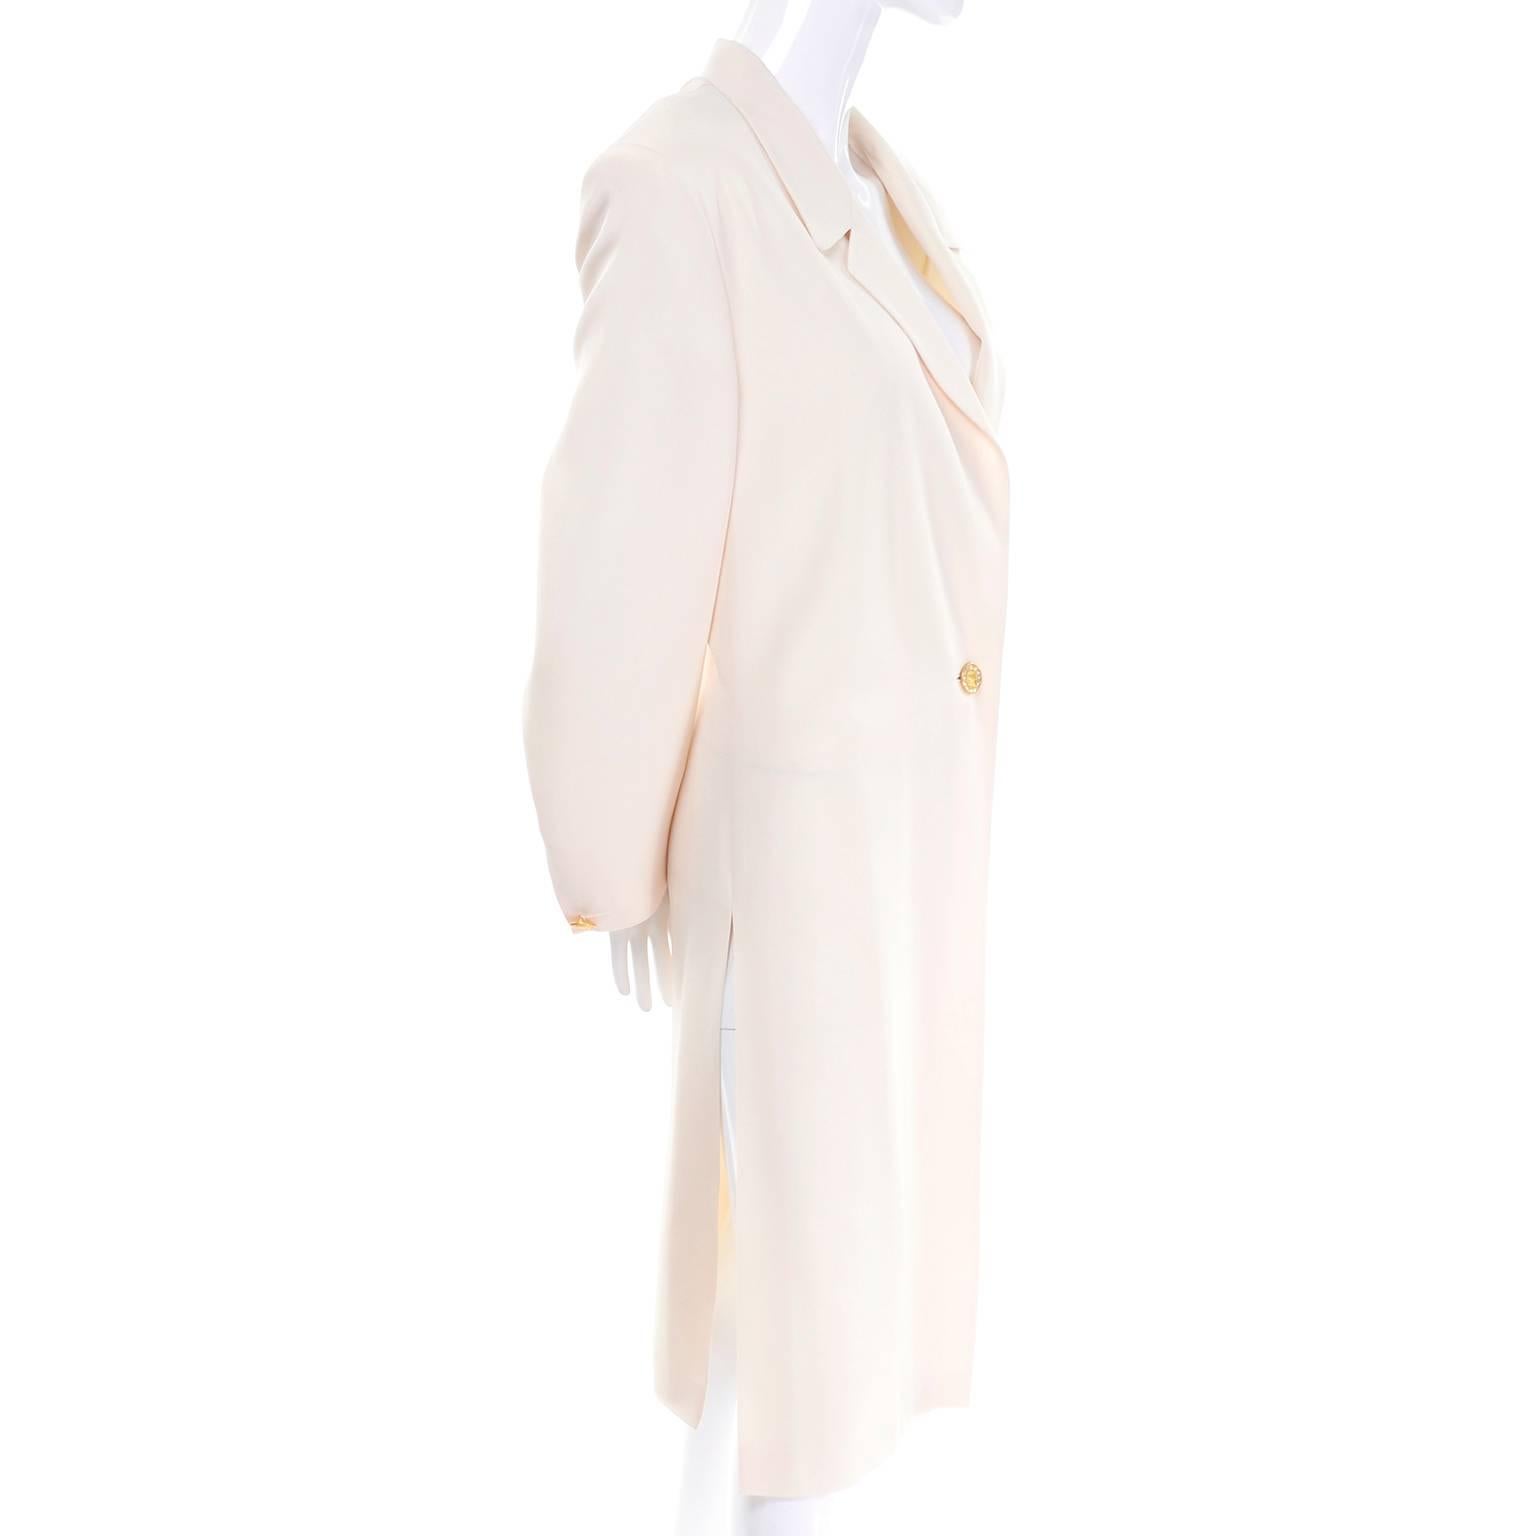 Les photos ne montrent pas à quel point cet incroyable manteau de soirée Escada est magnifique en personne !  Nous avons quelques articles vintage Escada à vendre sur 1stdibs en ce moment, provenant d'une succession que nous avons acquise récemment.